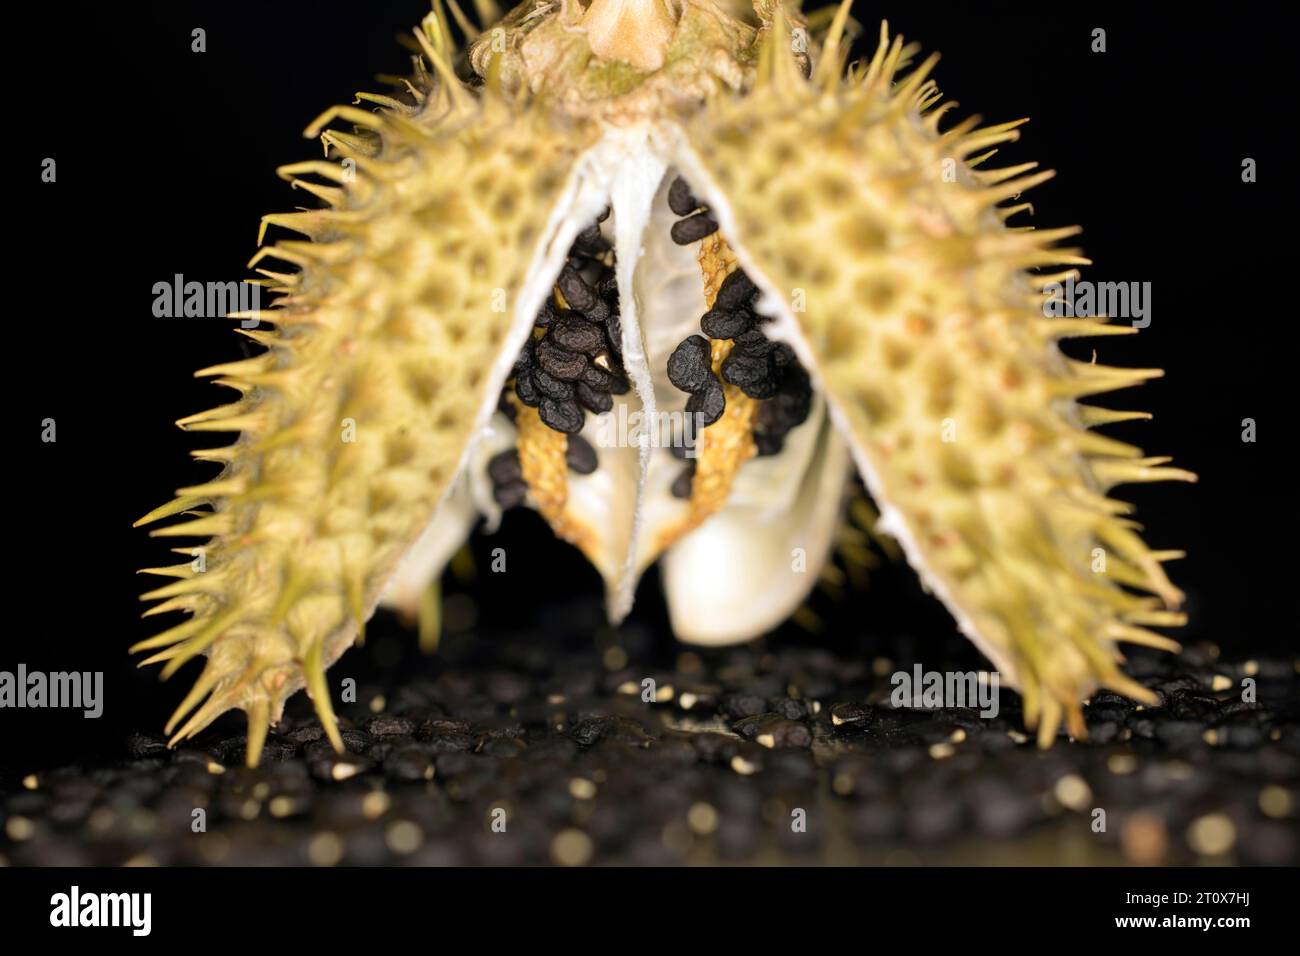 Geöffnete Samenkapsel mit Samen eines giftigen (Datura), Studiofoto mit schwarzem Hintergrund Stockfoto